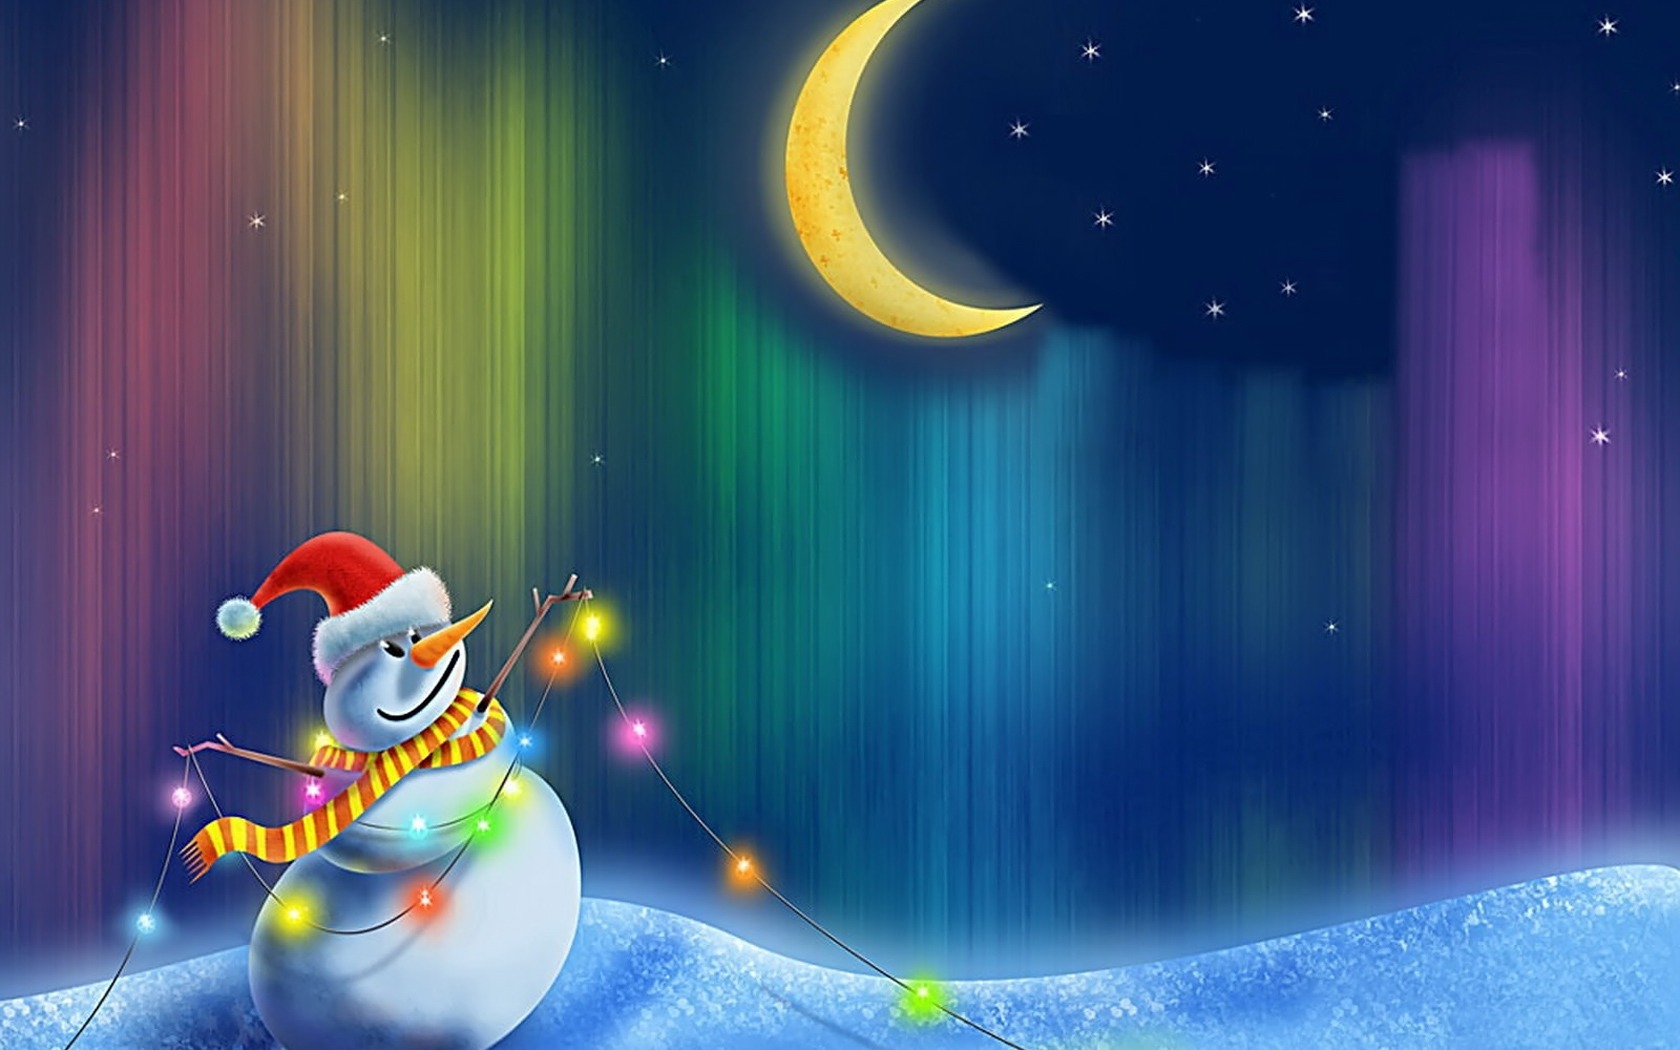 Snowman in HD desktop wallpaper.